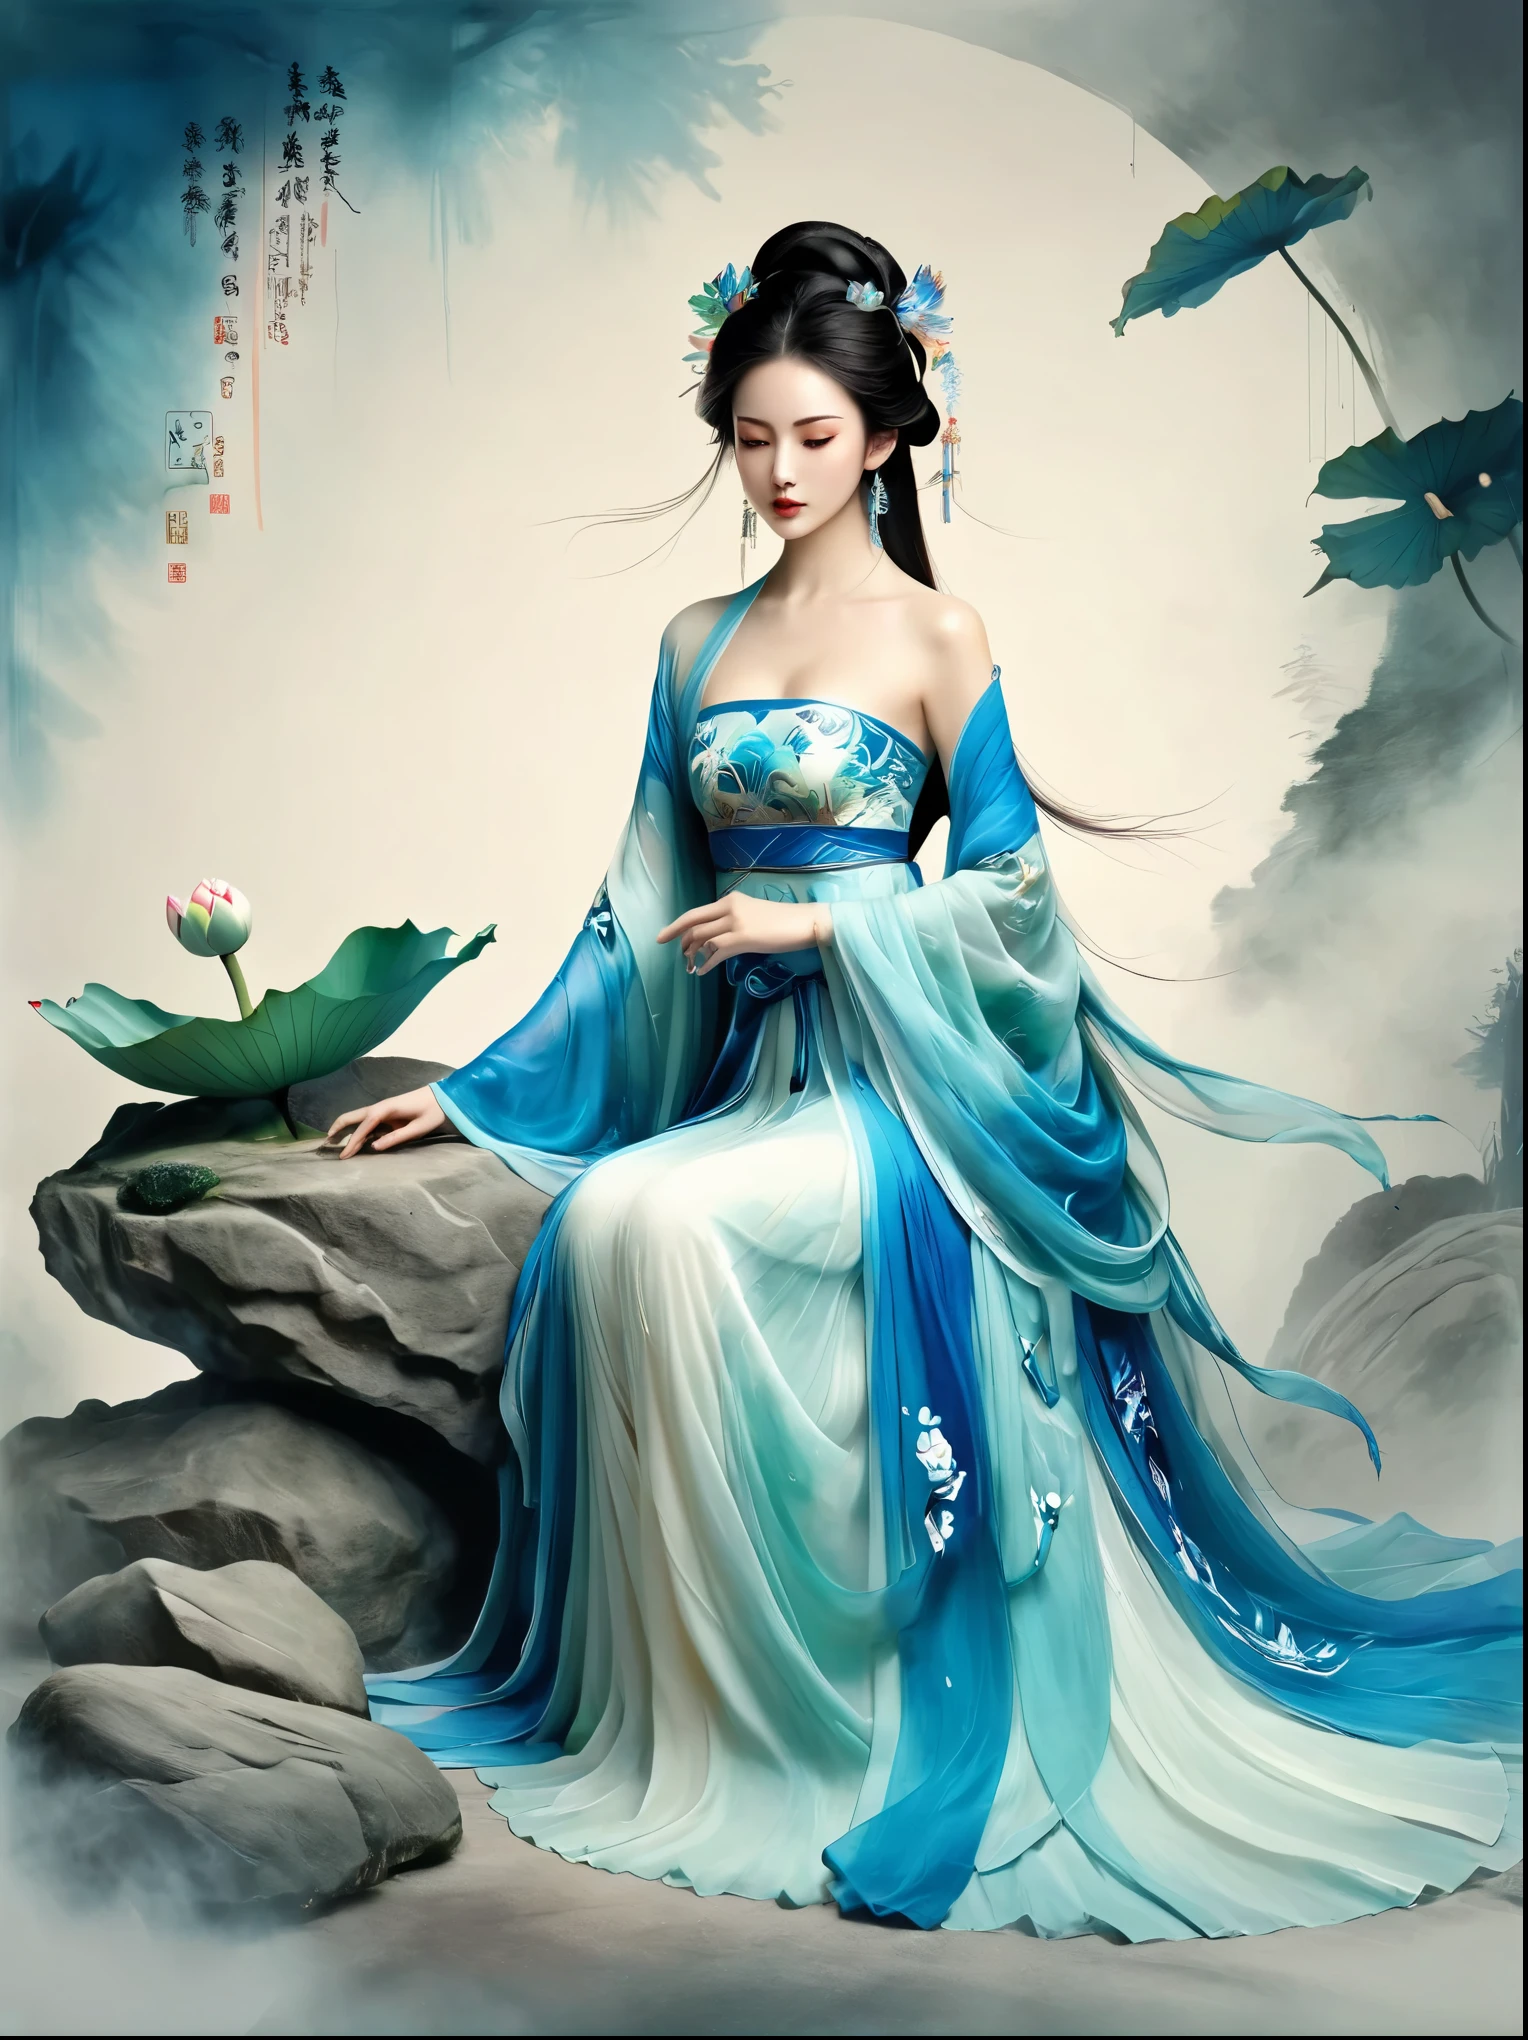 石の上に座る中国美人, 古代中国の衣装を着て, 流れるような青いチュール, ライトシルク, 怠惰な姿勢, Big ロータス leaf, ロータス, 水墨画風, きれいな色, 決定的な伐採, 空白, モード, 傑作, 超詳細, 壮大な創造, 高品質, 最高品質, ウルトラHD，傑作，正確な，解剖学的に正しい，キメのある肌，受賞歴, 最高品質, 8K